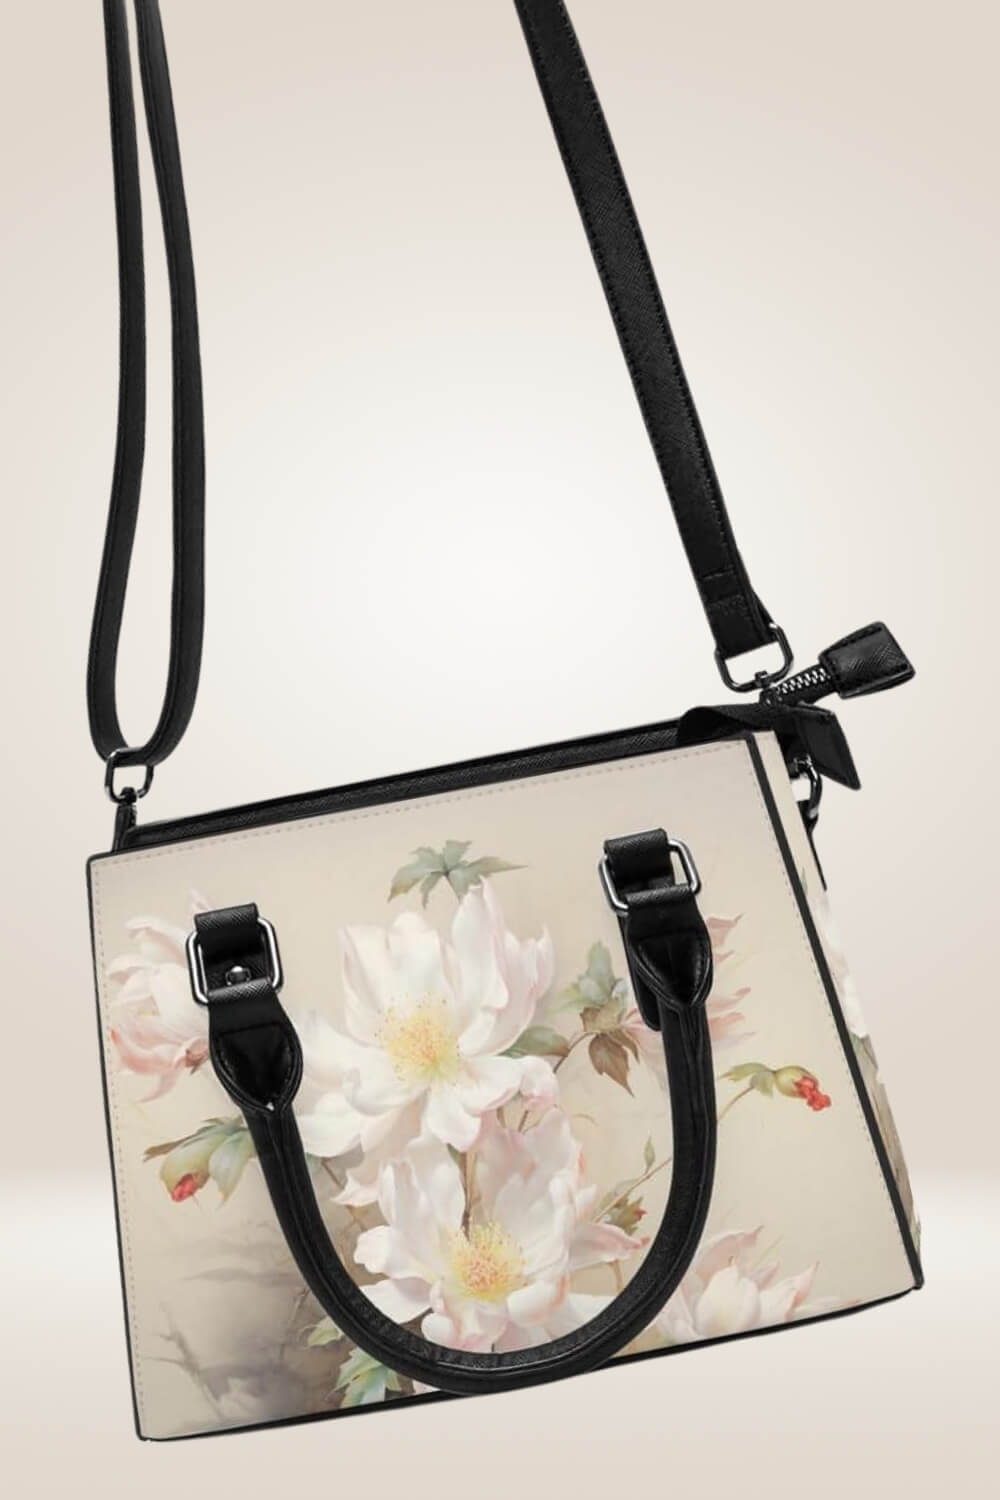 Off White Satchel Bag With Flowers - TGC Boutique - Satchel Handbag